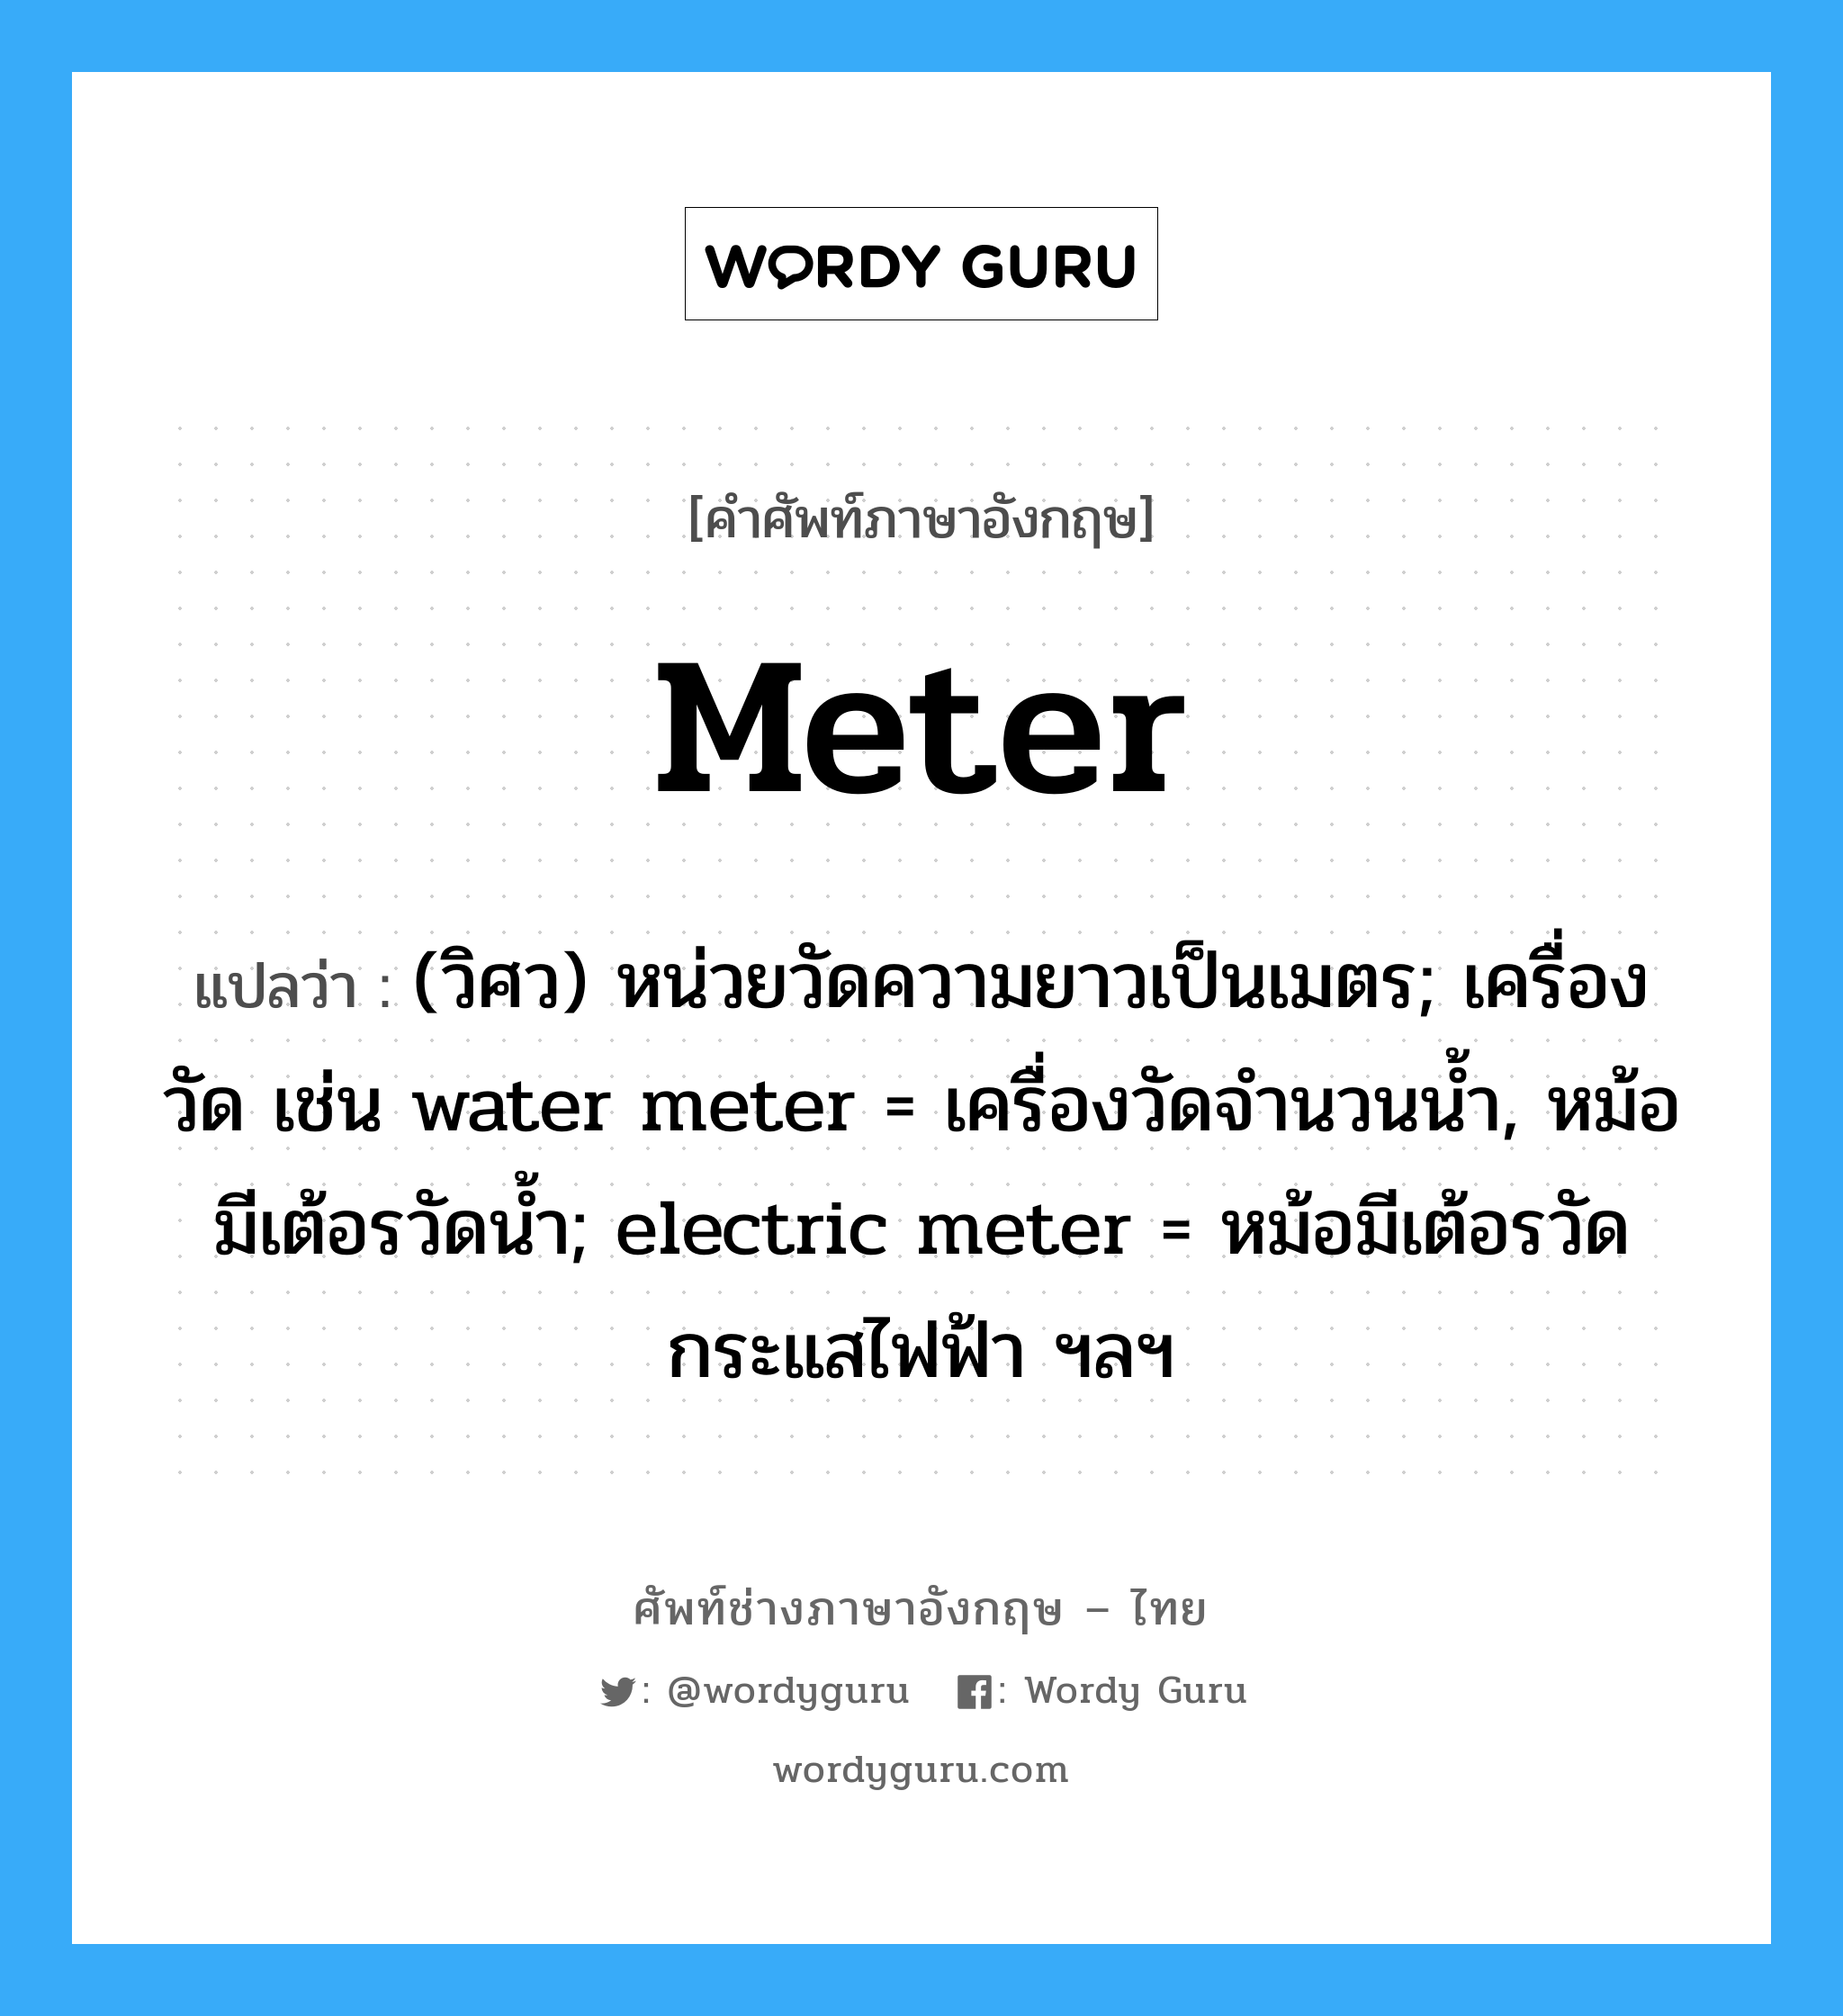 meter แปลว่า?, คำศัพท์ช่างภาษาอังกฤษ - ไทย meter คำศัพท์ภาษาอังกฤษ meter แปลว่า (วิศว) หน่วยวัดความยาวเป็นเมตร; เครื่องวัด เช่น water meter = เครื่องวัดจำนวนน้ำ, หม้อมีเต้อรวัดน้ำ; electric meter = หม้อมีเต้อรวัดกระแสไฟฟ้า ฯลฯ